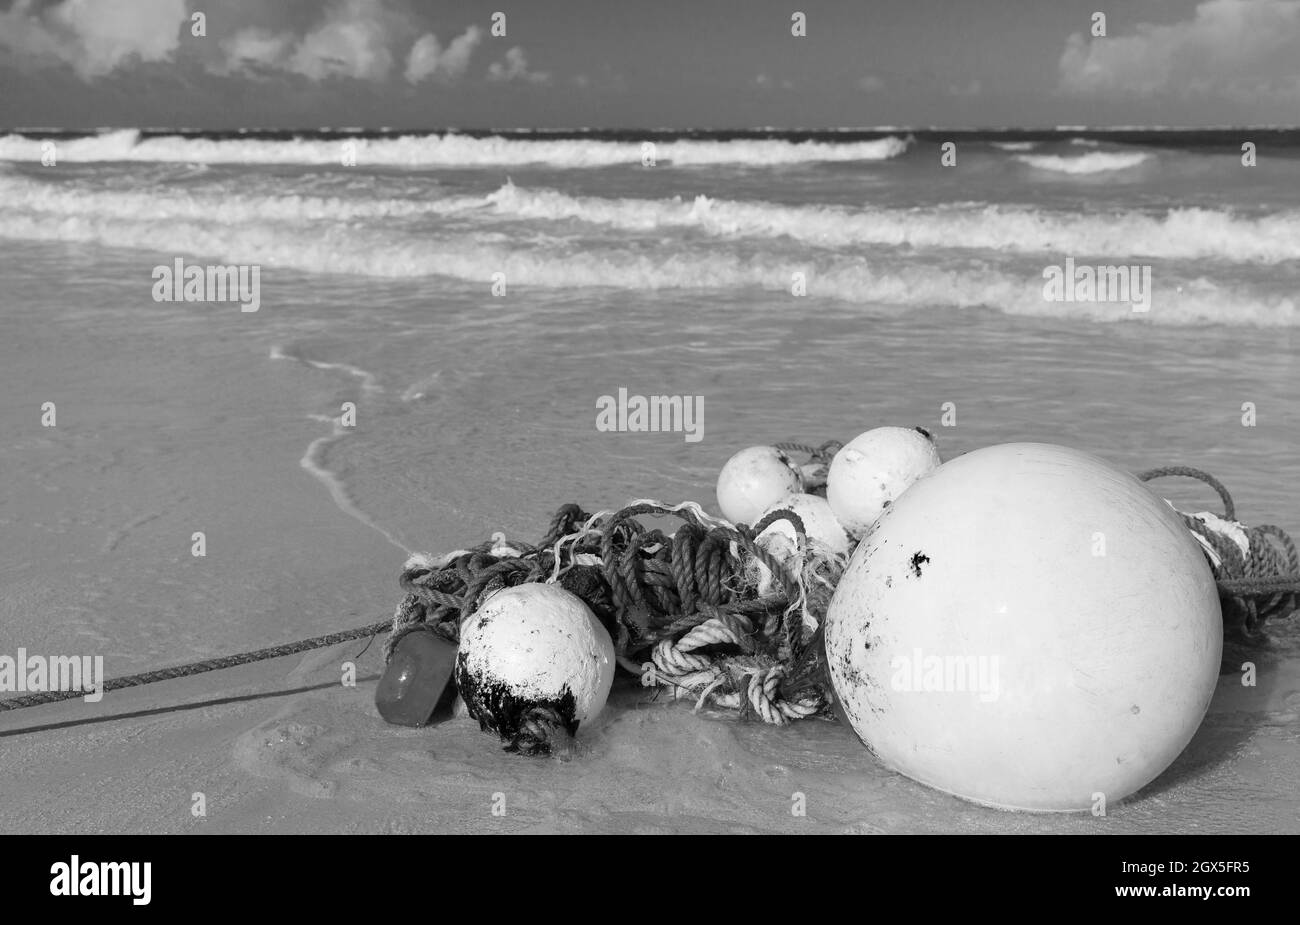 Des flotteurs et une corde reposent sur une côte de sable humide. Photo stylisée vintage en noir et blanc Banque D'Images